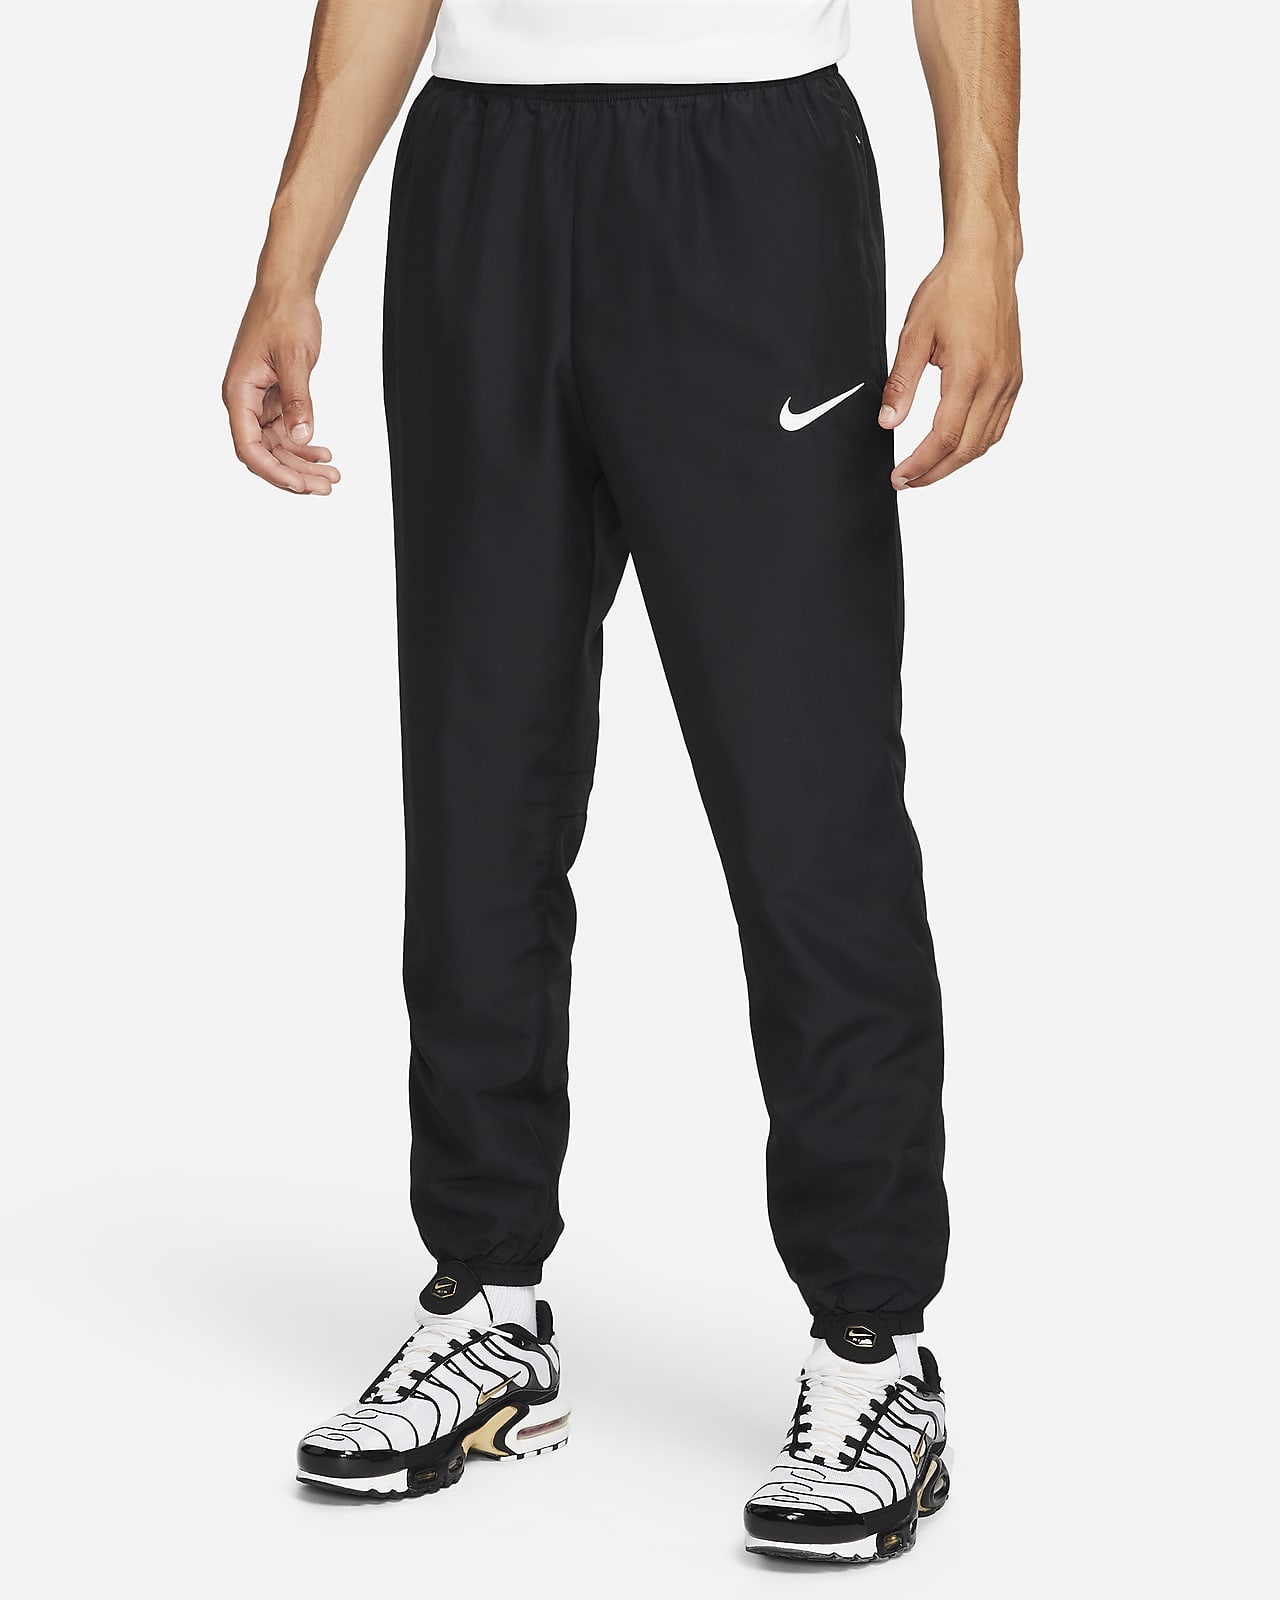 Pánské fotbalové kalhoty Dri-FIT Nike Academy